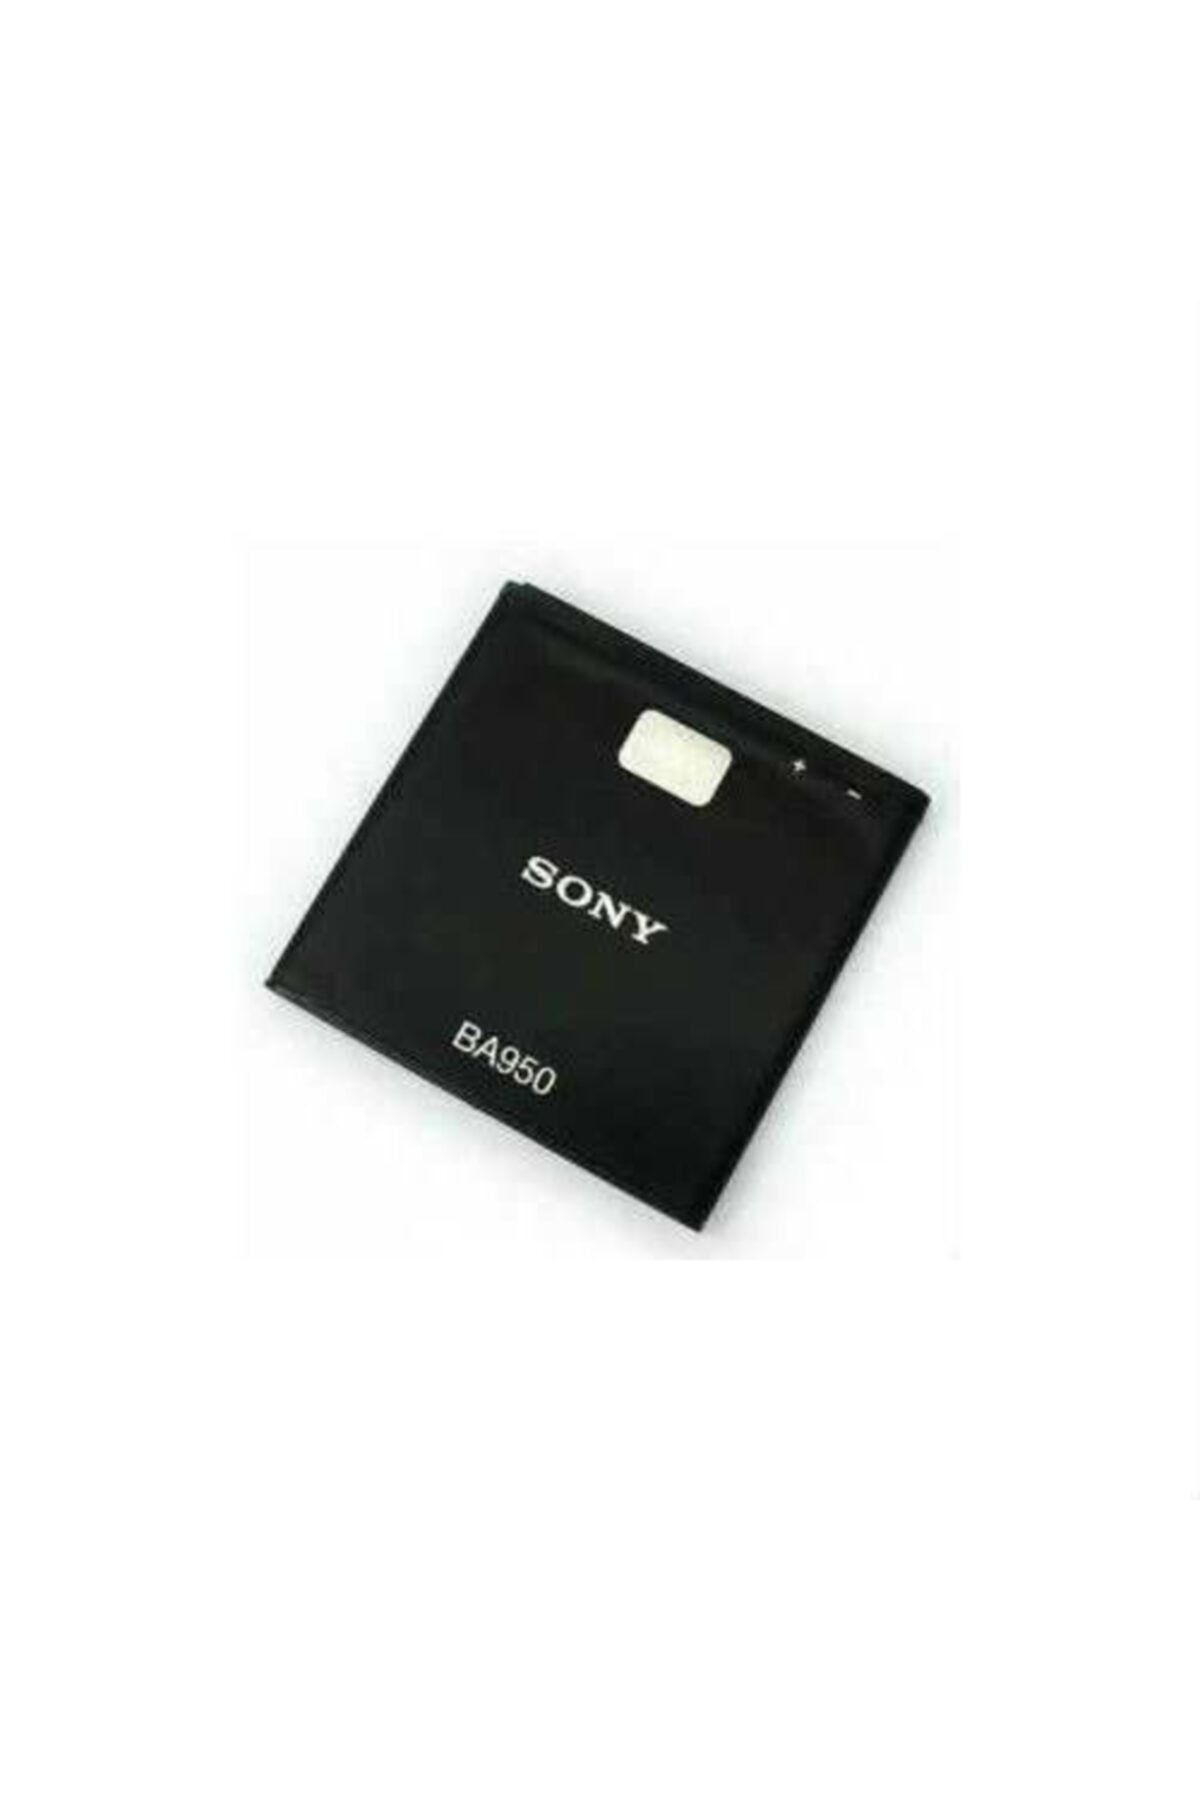 Sony Xperia Zr C5502 C5303 Ba950 Batarya Pil